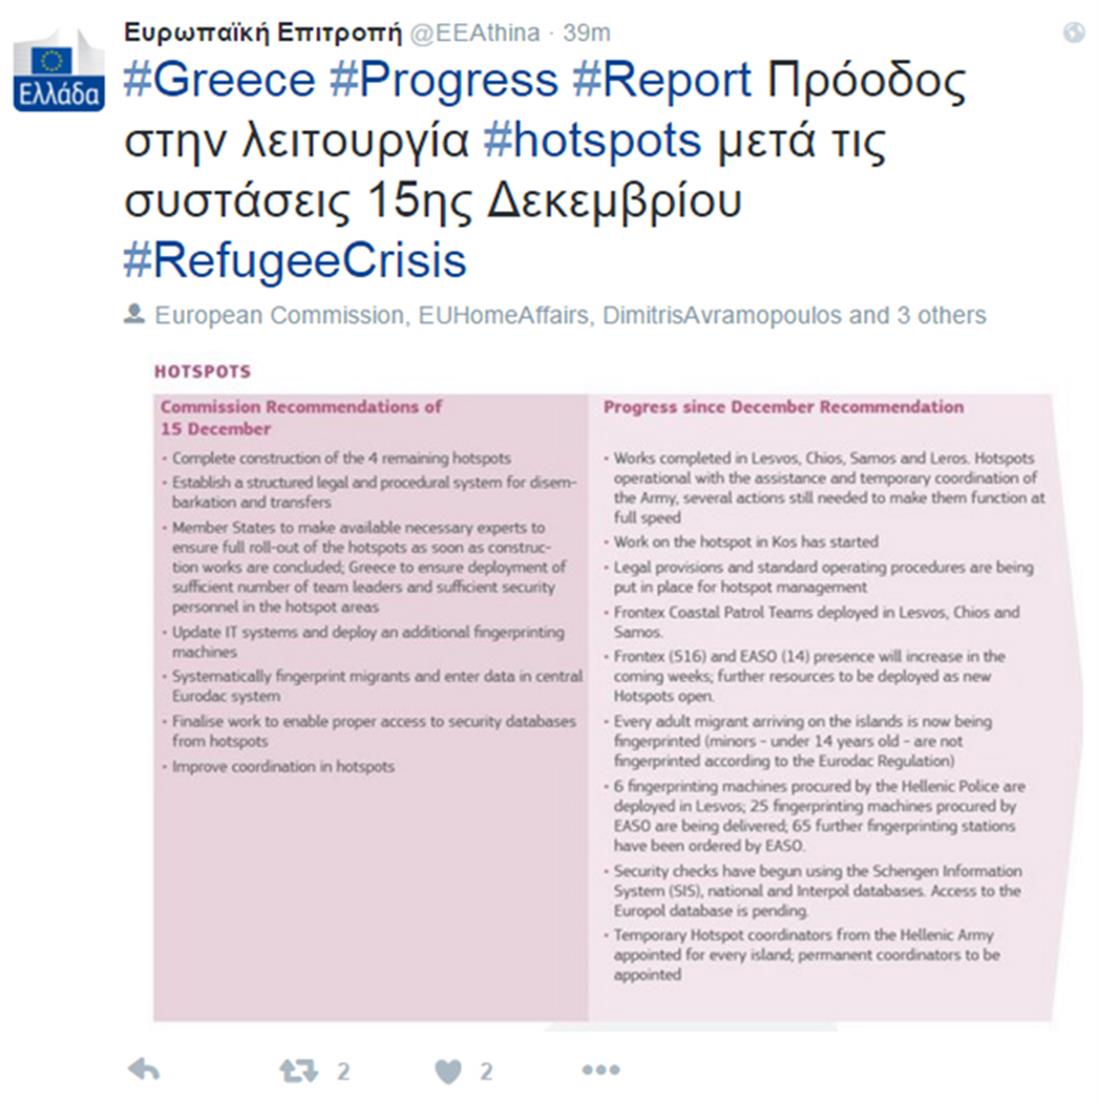 Ευρωπαϊκή Επιτροπή - Αθήνα - twitter - ανάρτηση - Hot Spots